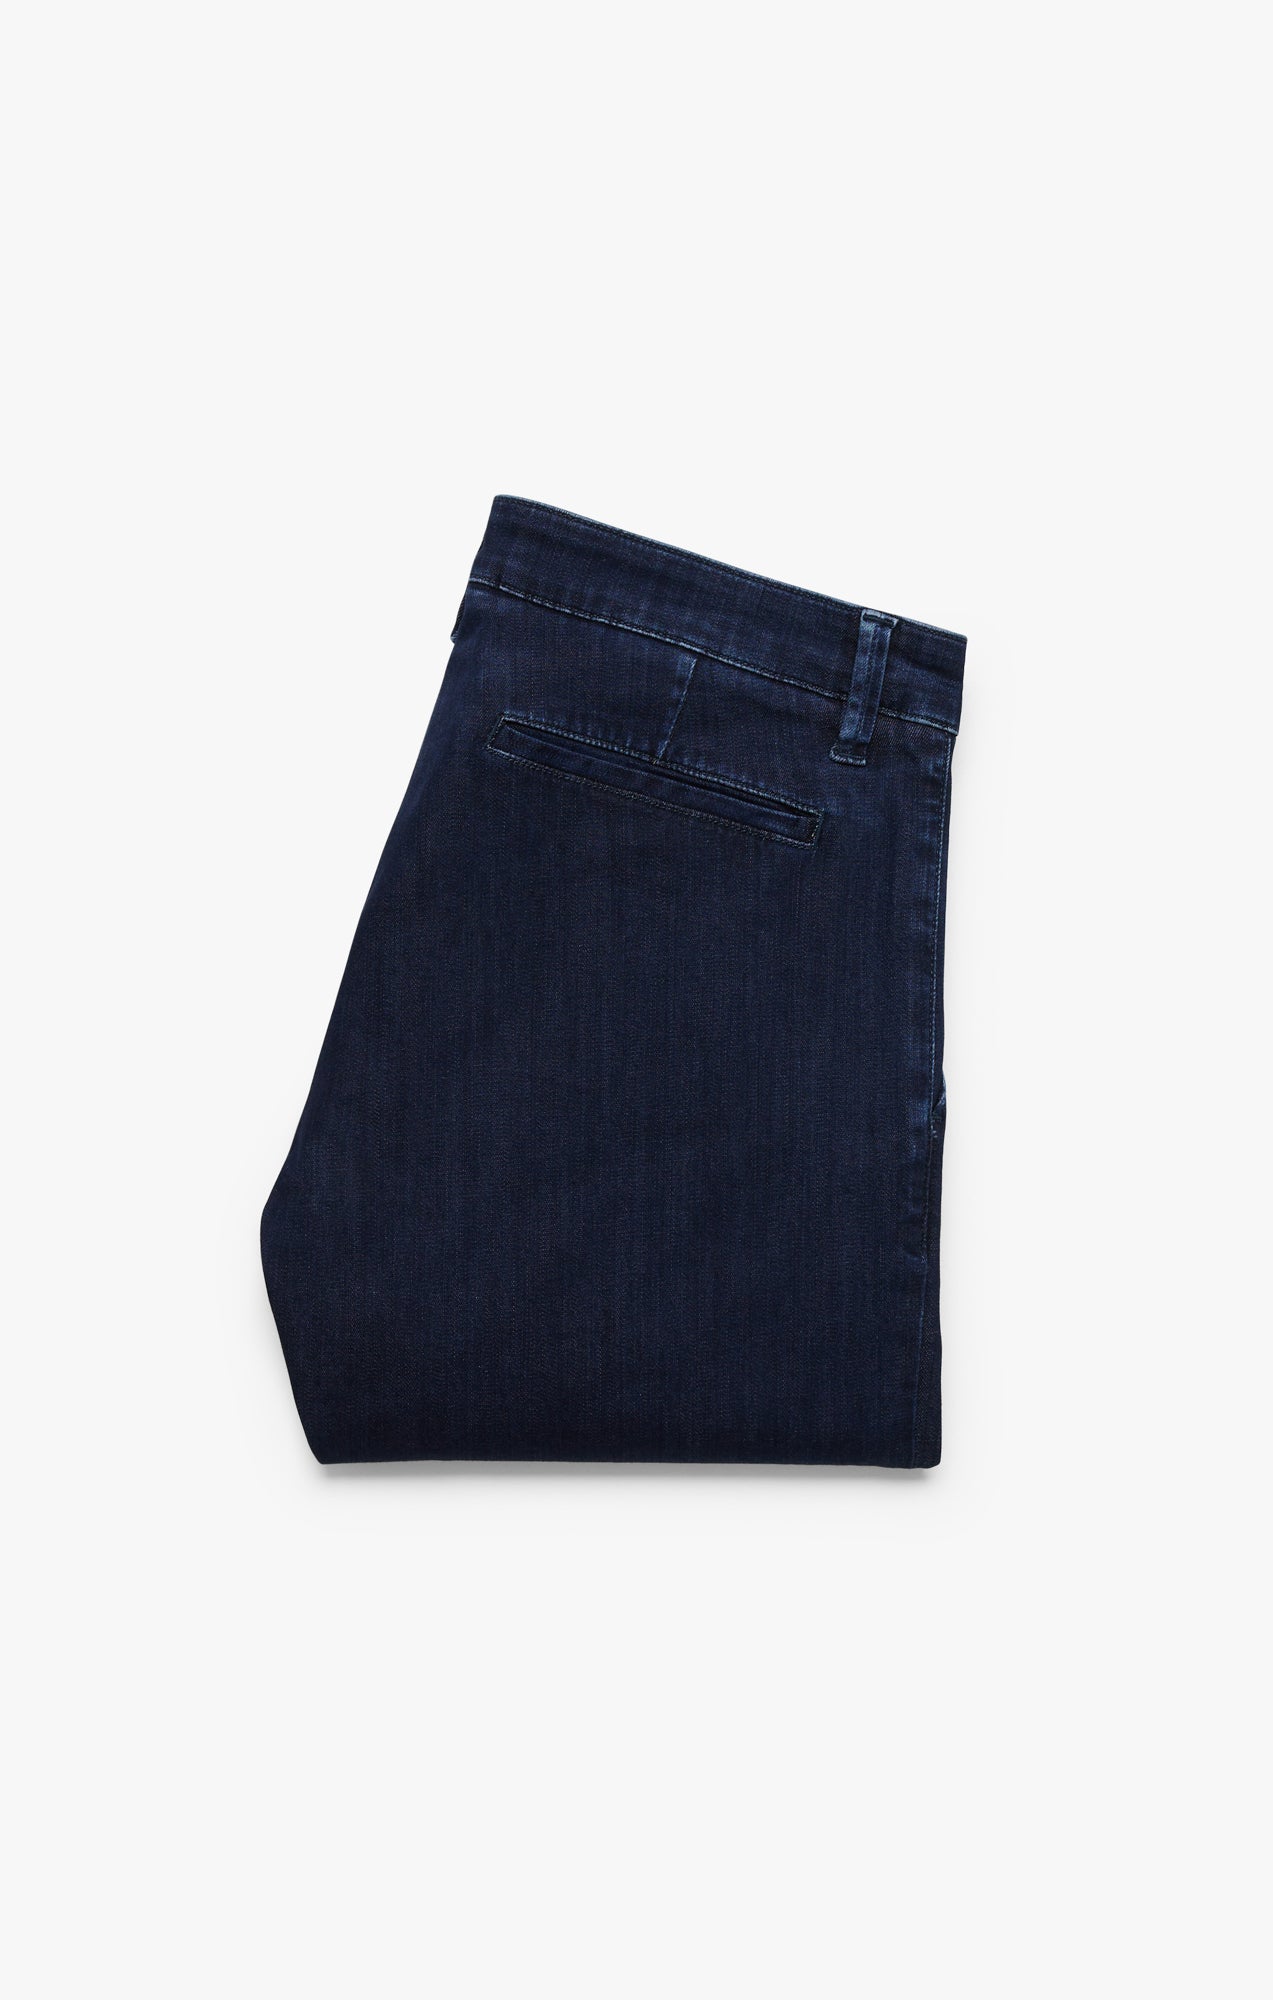 Verona Slim Leg Chino Jeans In Dark Brushed Refined